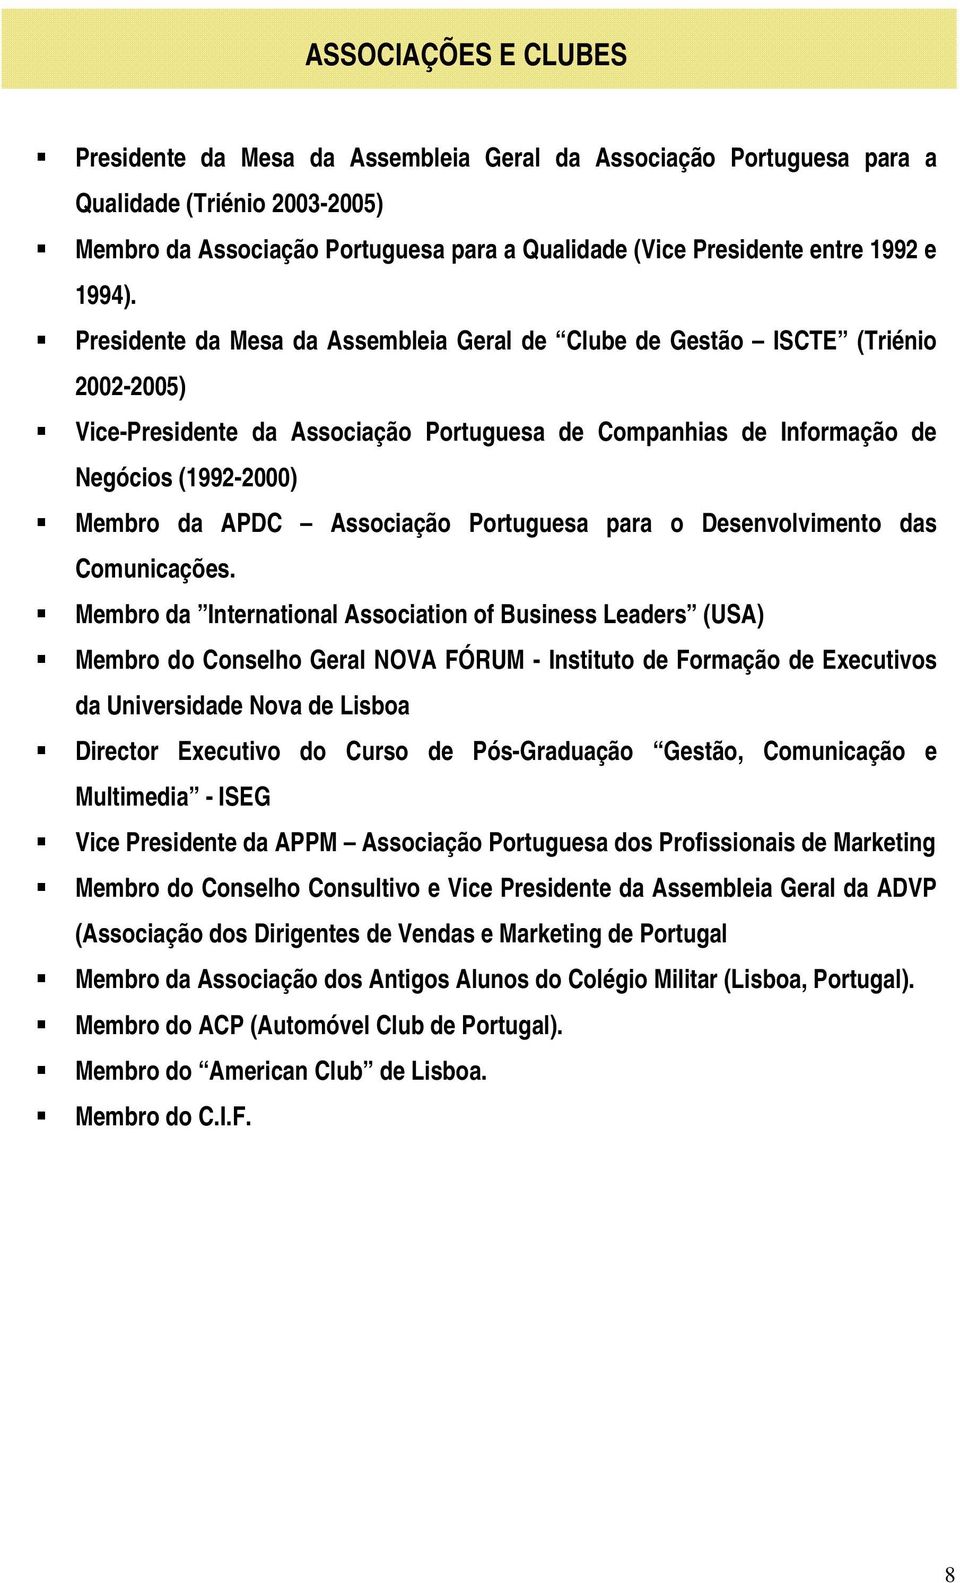 Presidente da Mesa da Assembleia Geral de Clube de Gestão ISCTE (Triénio 2002-2005) Vice-Presidente da Associação Portuguesa de Companhias de Informação de Negócios (1992-2000) Membro da APDC